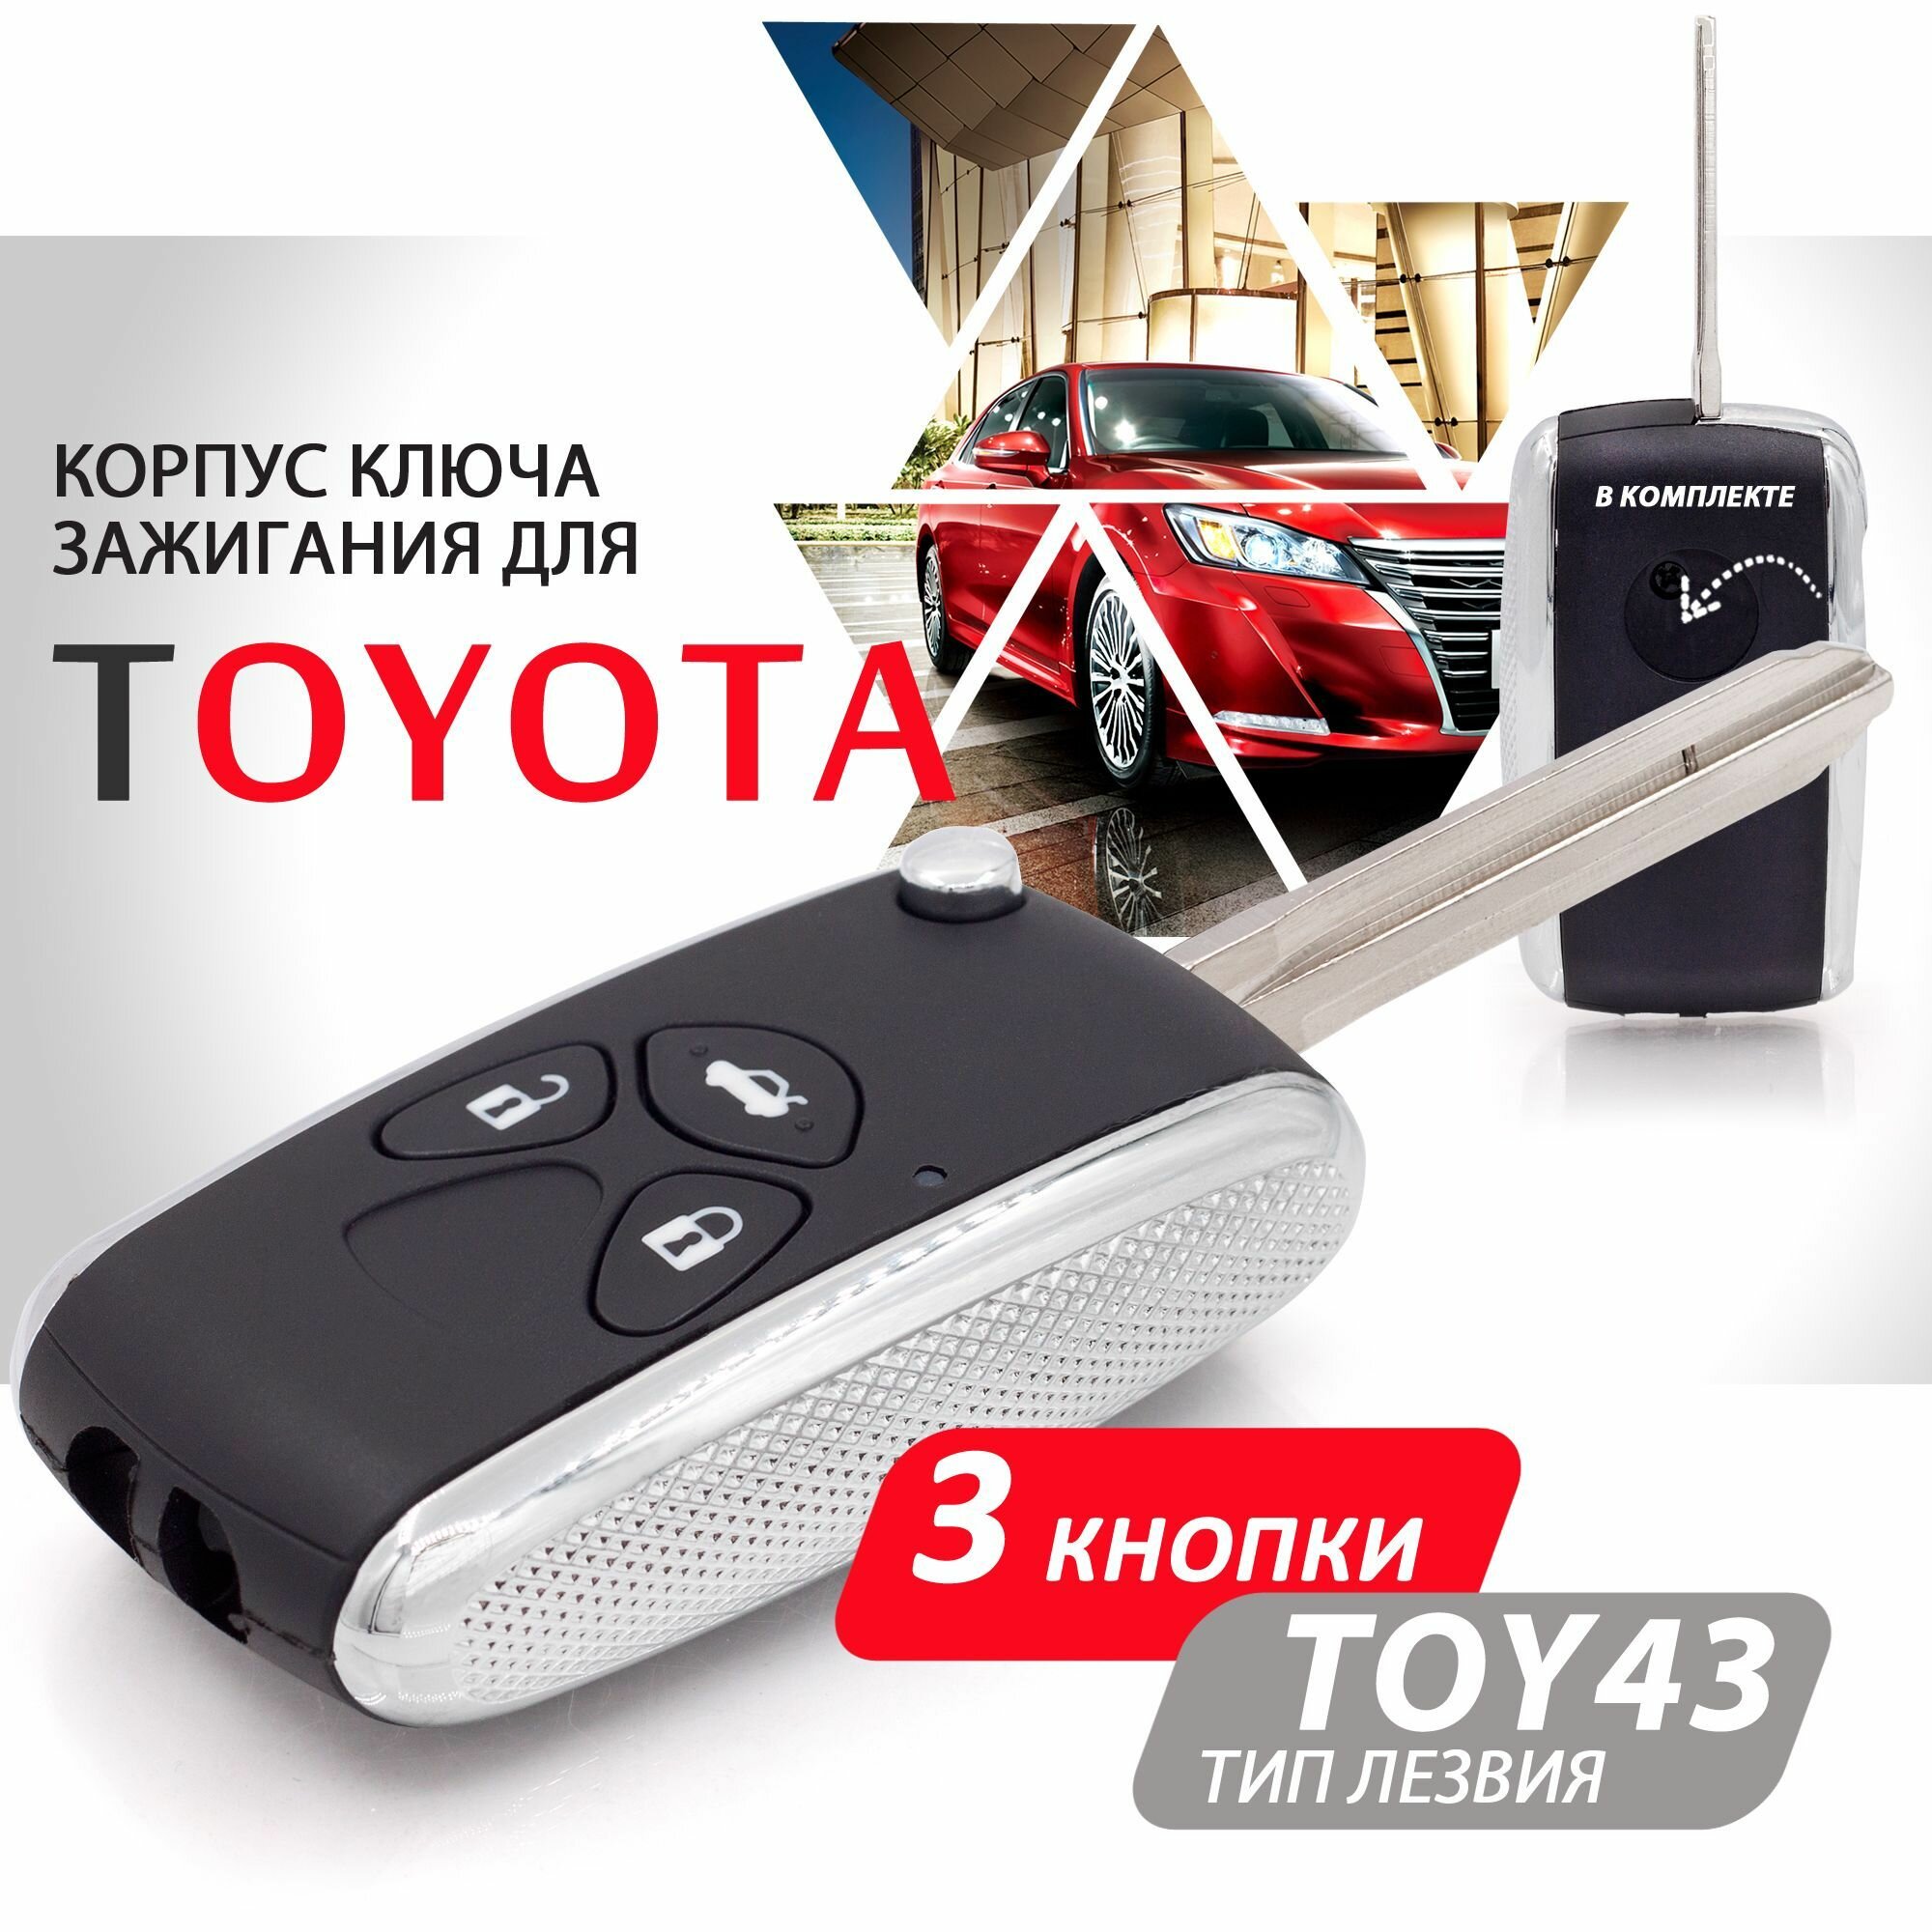 Корпус ключа зажигания для Toyota (3 кнопки выкидное лезвие TOY43) / Брелок автомобильный для Камри РАВ4 Королла